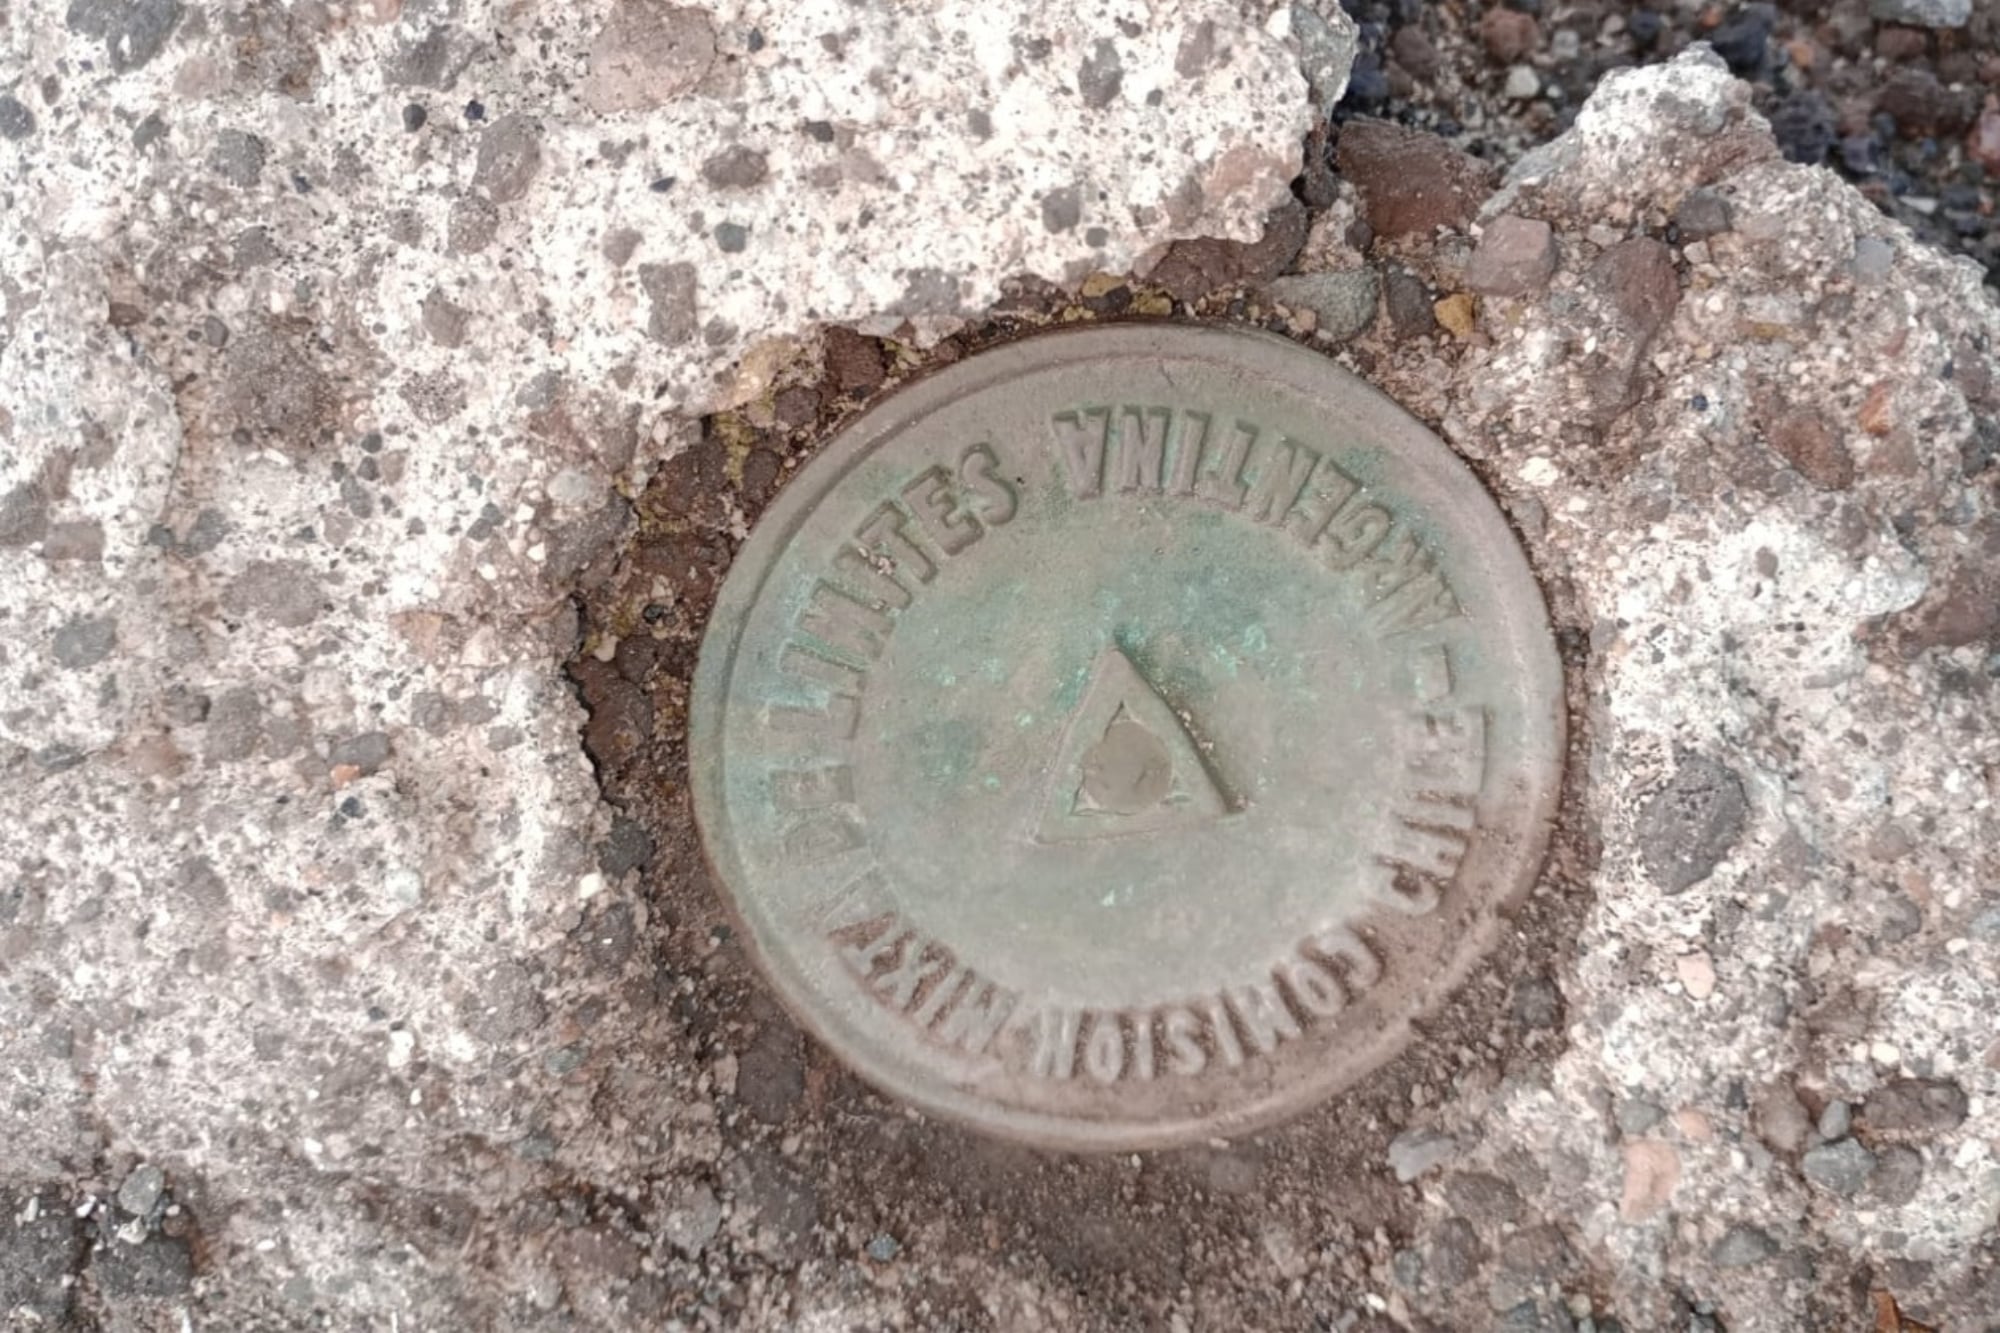 Hallaron una placa metálica histórica del siglo XIX enterrada en el Parque Nacional Nahuel Huapi